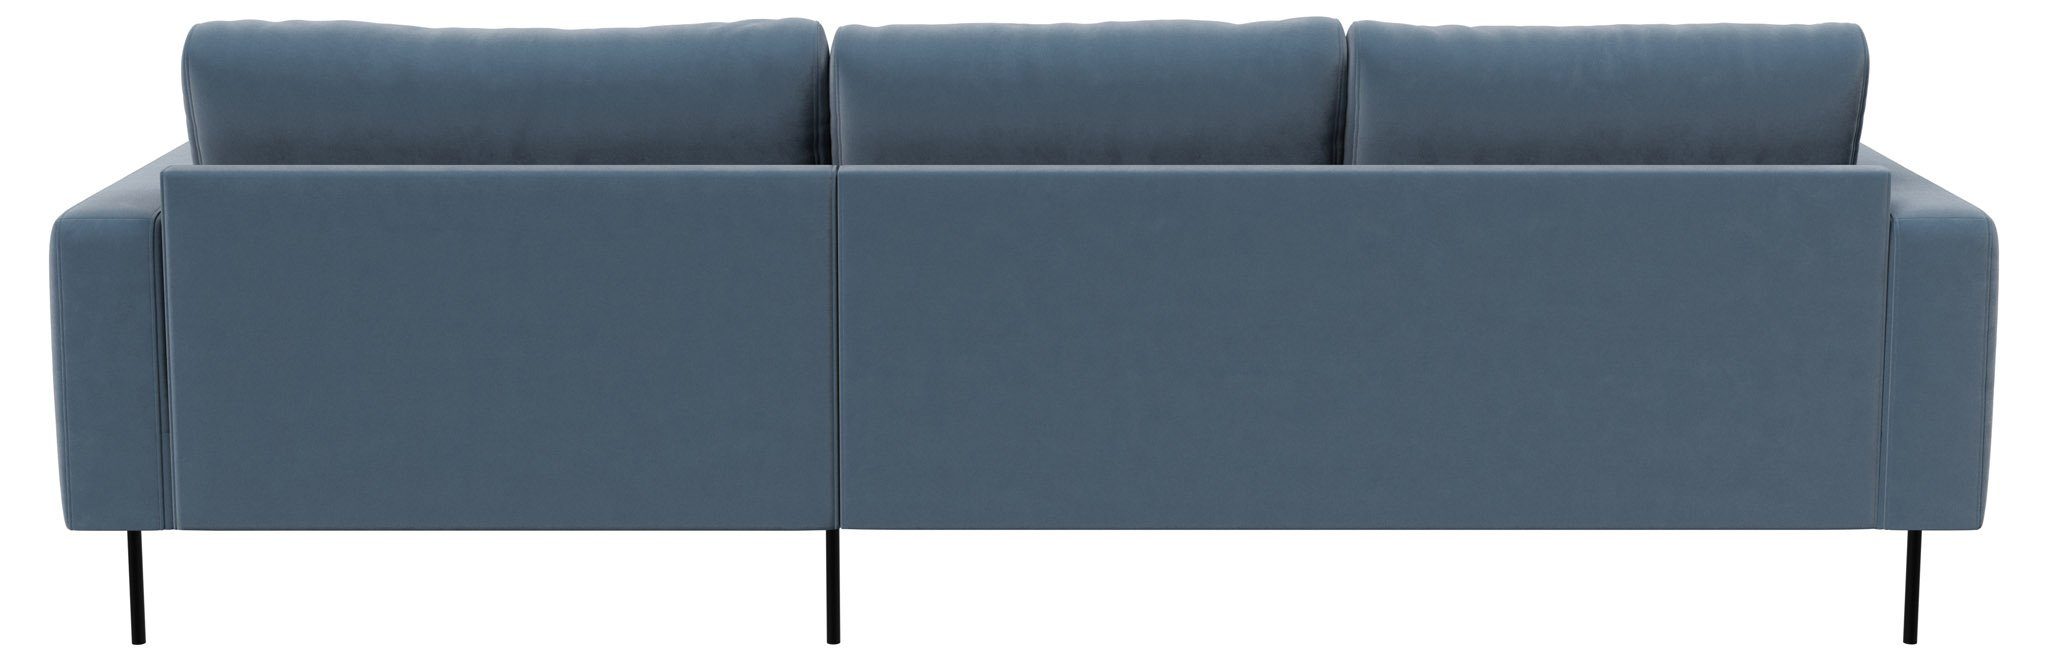 ebuy24 Sofa Rouge Staubblau//Rechtsgewendet mit.//Staubblau//Rechtsgewen 2,5-Sitzer-Sofa